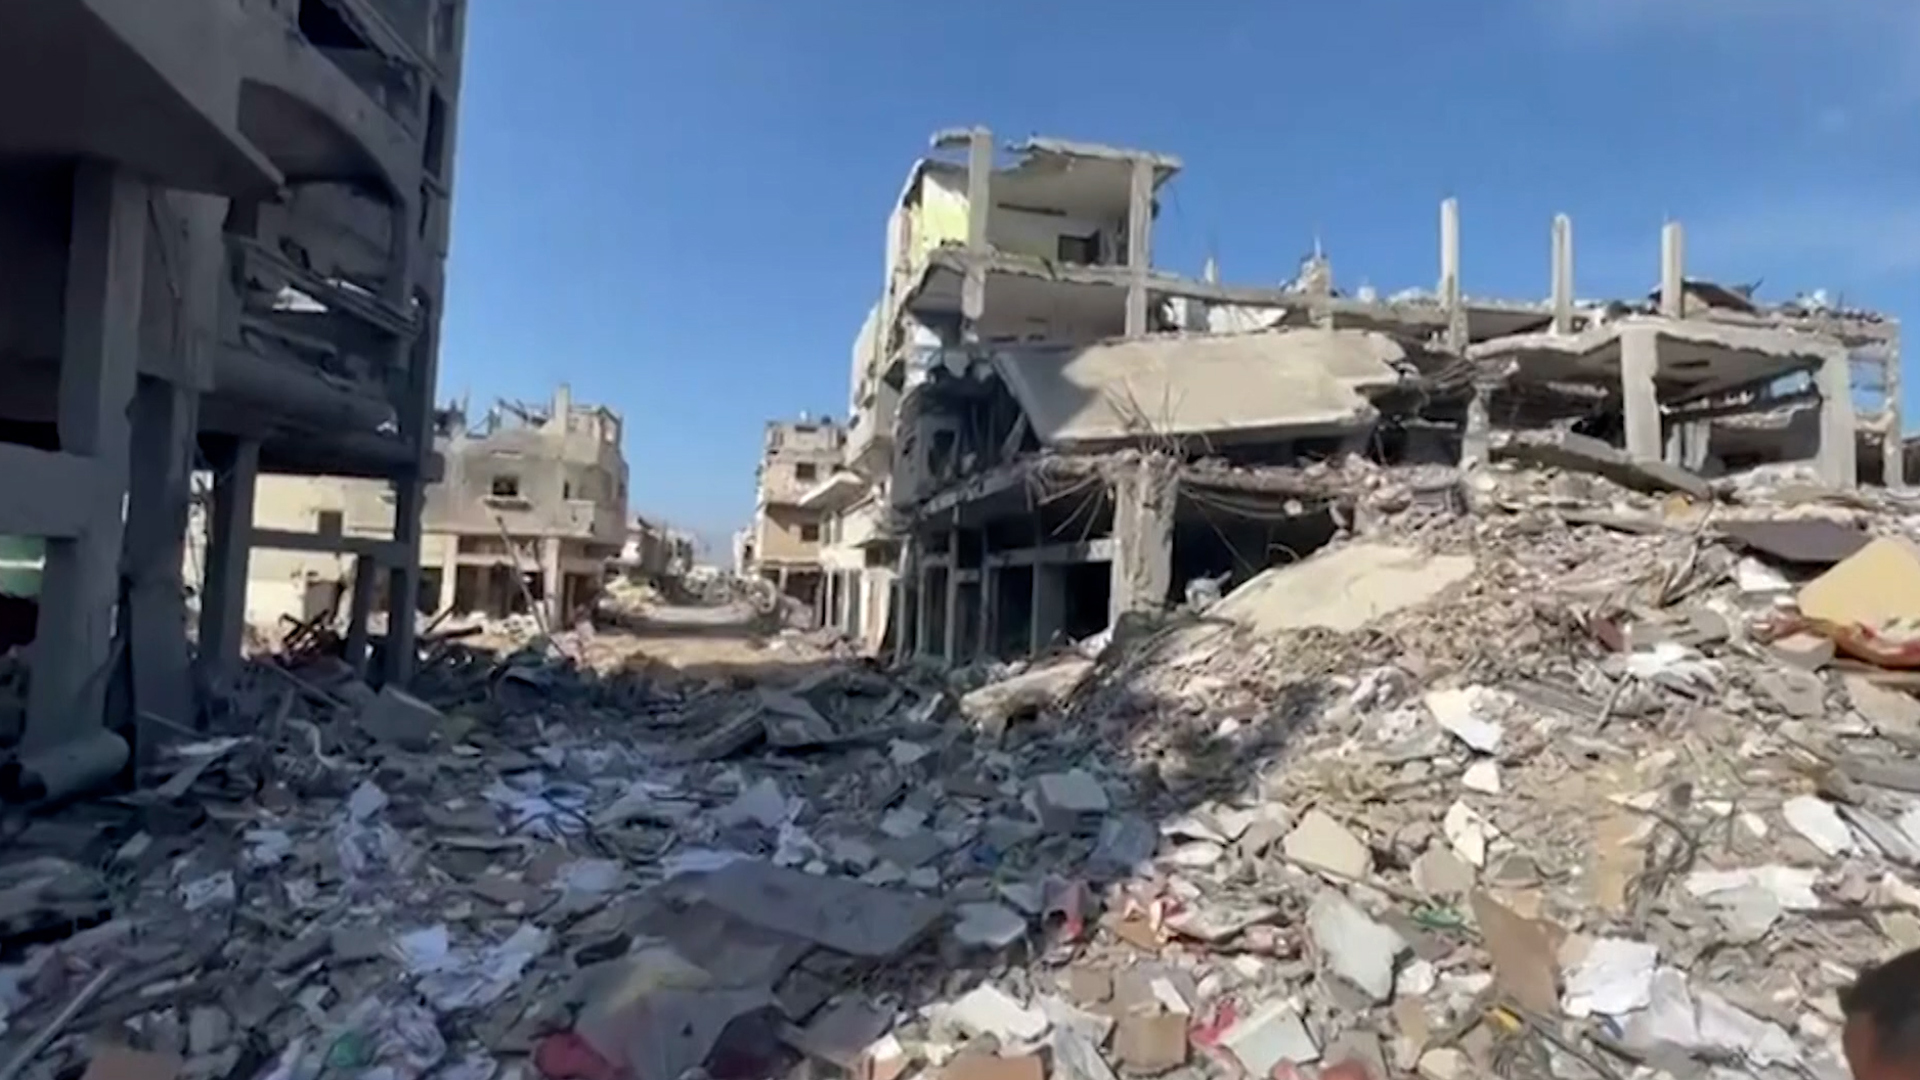 مشاهد دمار واسع بمدينة بيت حانون جراء القصف الإسرائيلي | البرامج – البوكس نيوز